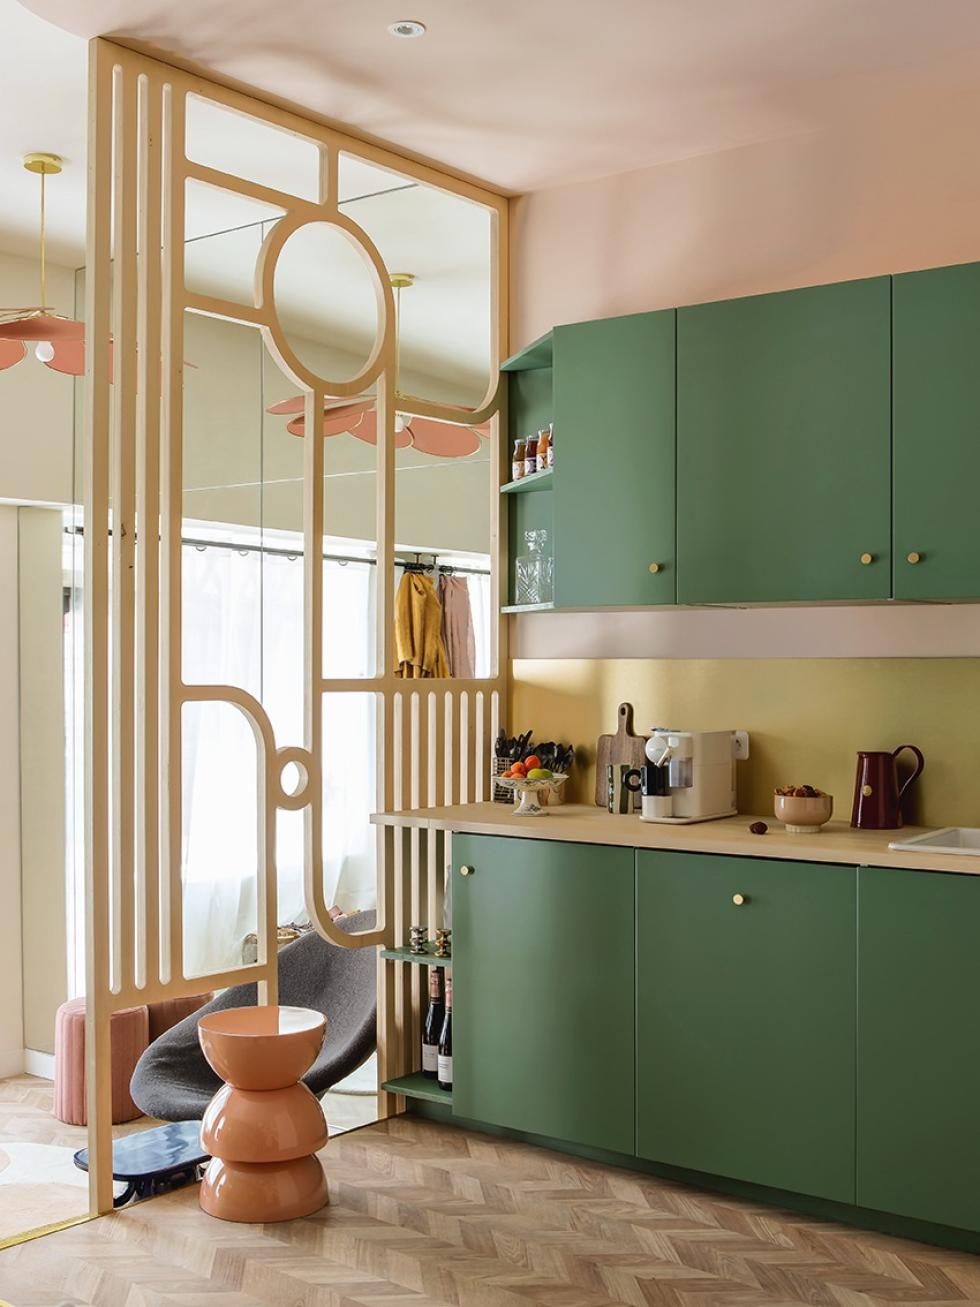 Interior Projekt realisiert mit glatten mattlackierten Fronten von Plum in Grün 03 - Vert de gris - ⓒ Hervé Goluza